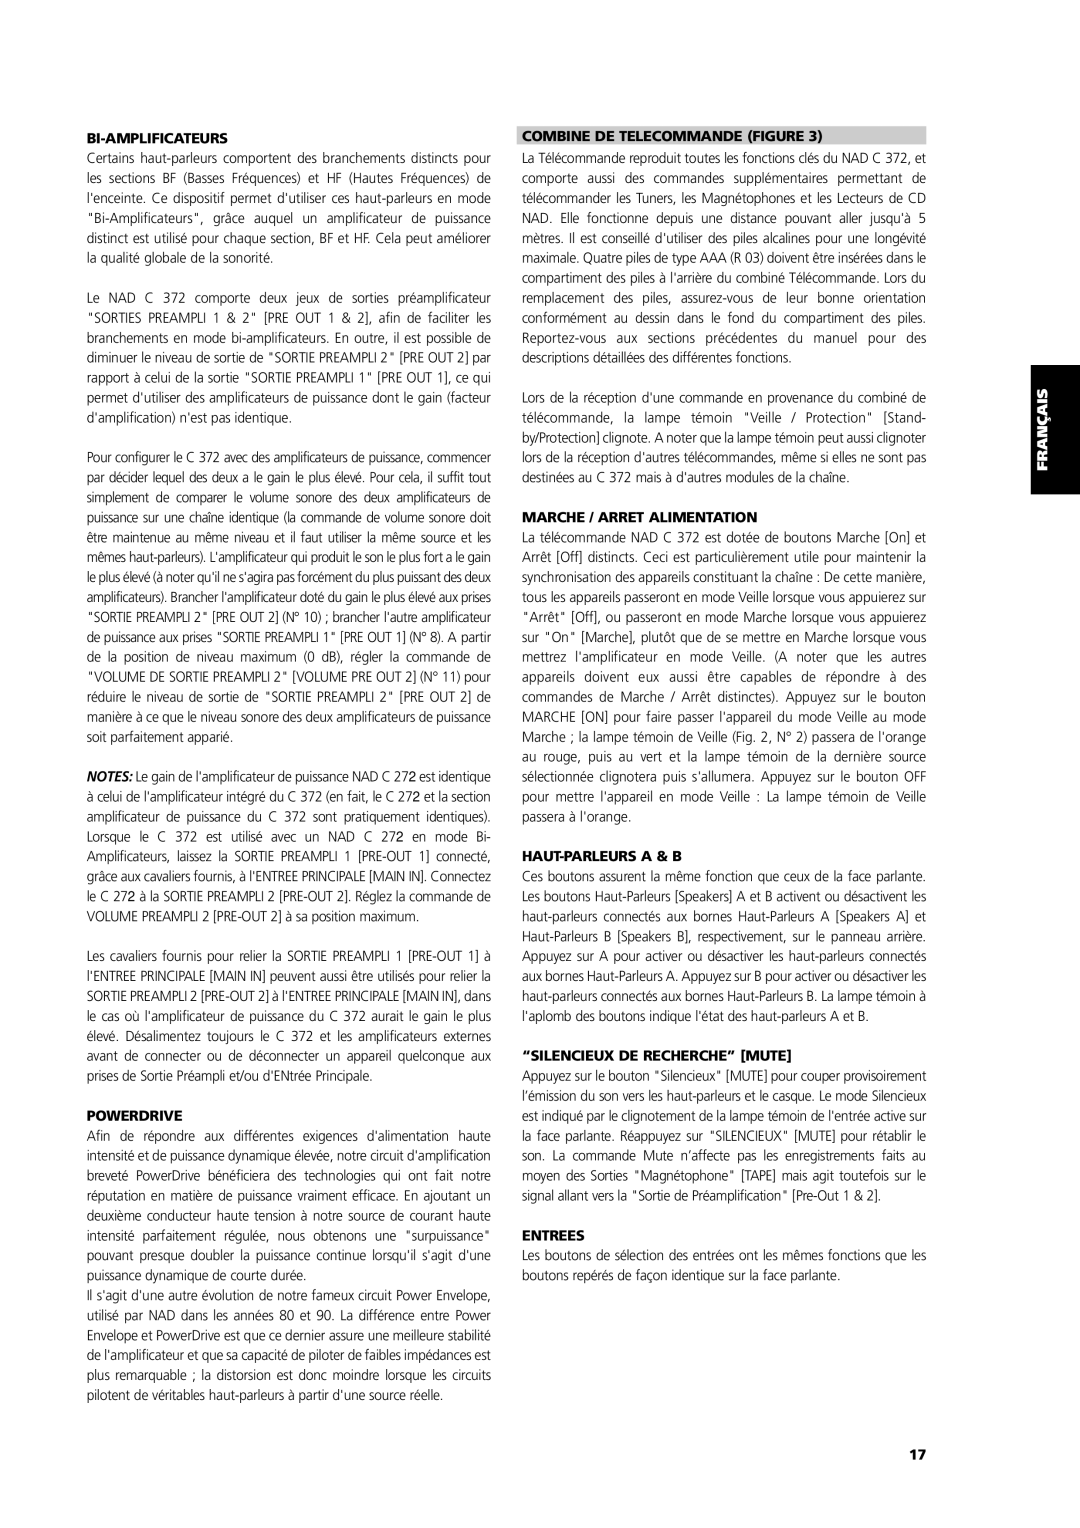 NAD C 372 Bi-Amplificateurs, Combine De Telecommande Figure, Marche / Arret Alimentation, Haut-Parleursa & B, Entrees 